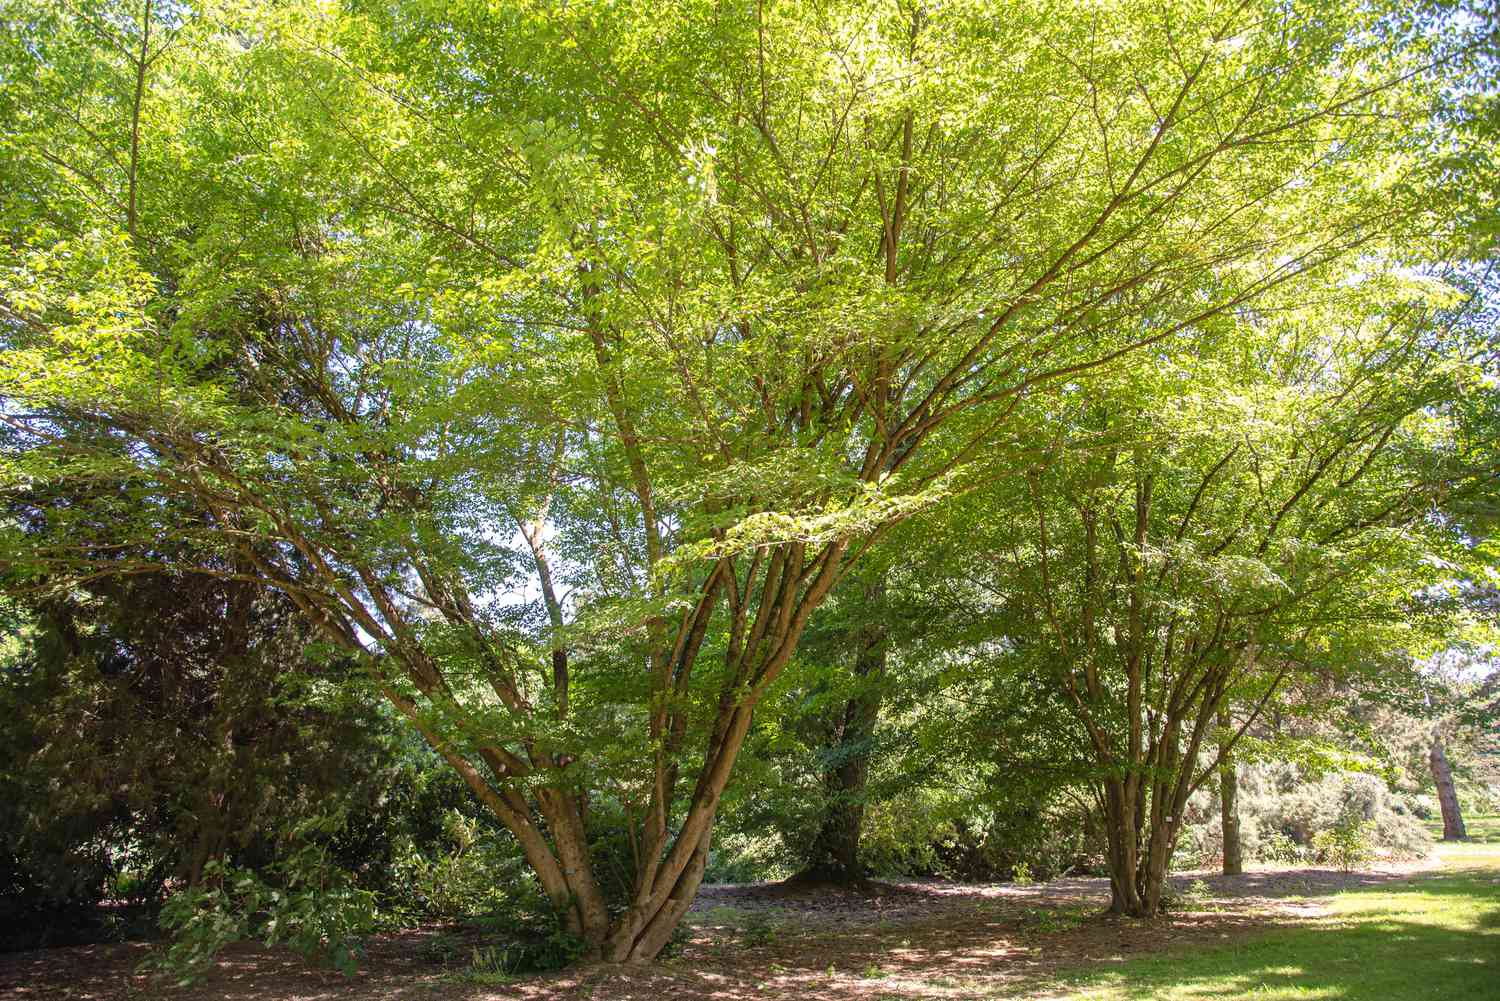 Arce de hoja enredadera con múltiples troncos y hojas de color verde brillante en ramas extendidas